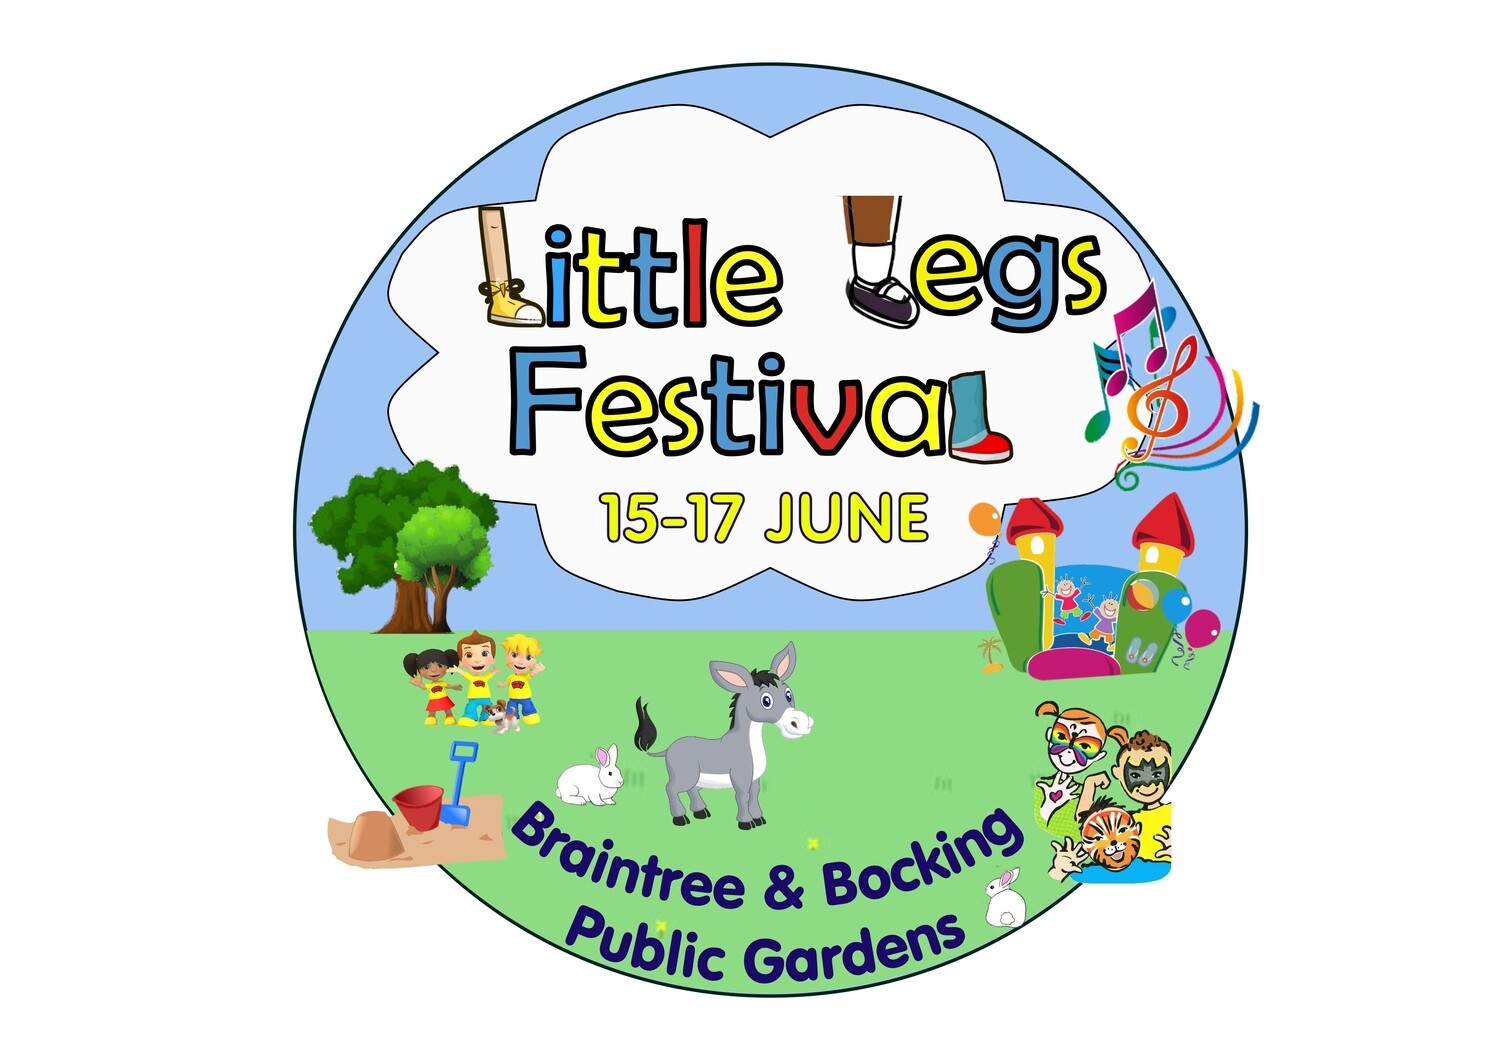 Little Legs Pre-School Festival 15-17 June Ticket